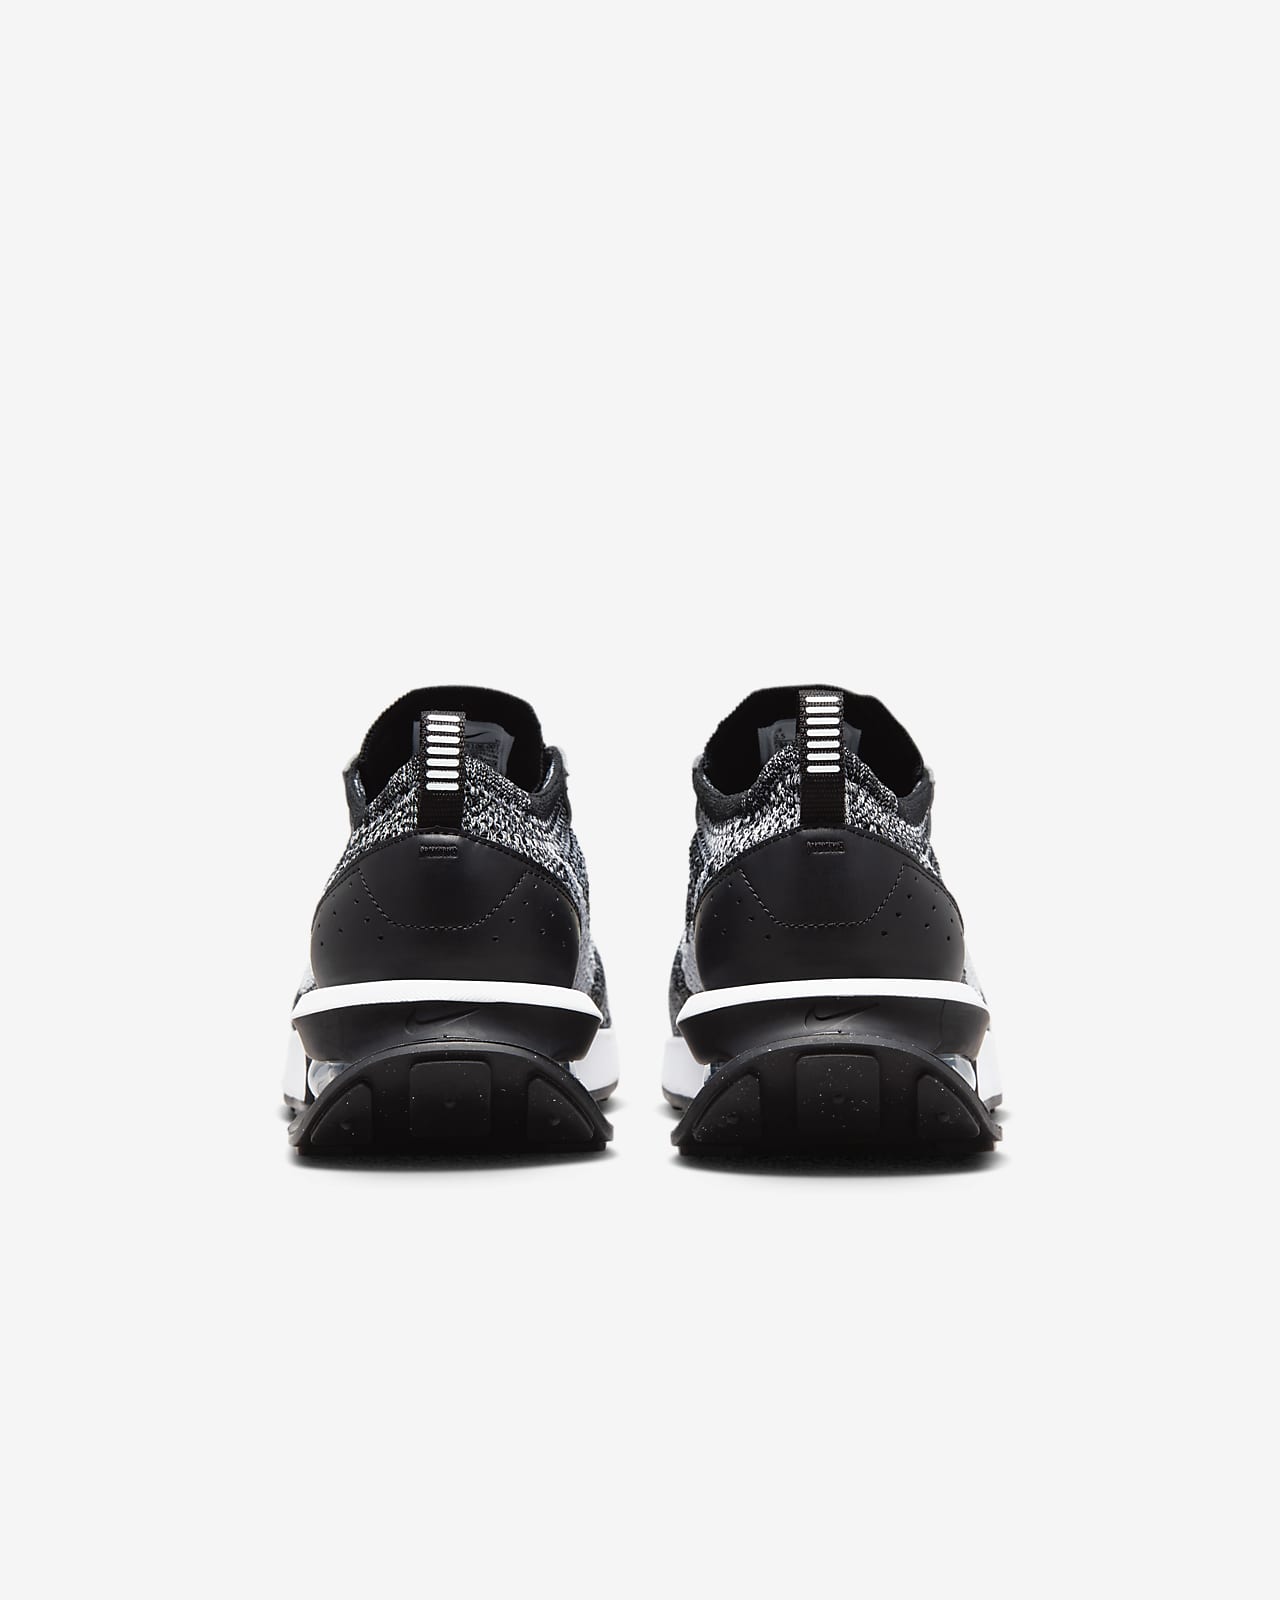 Nike Air Max Flyknit Racer sneakers in black